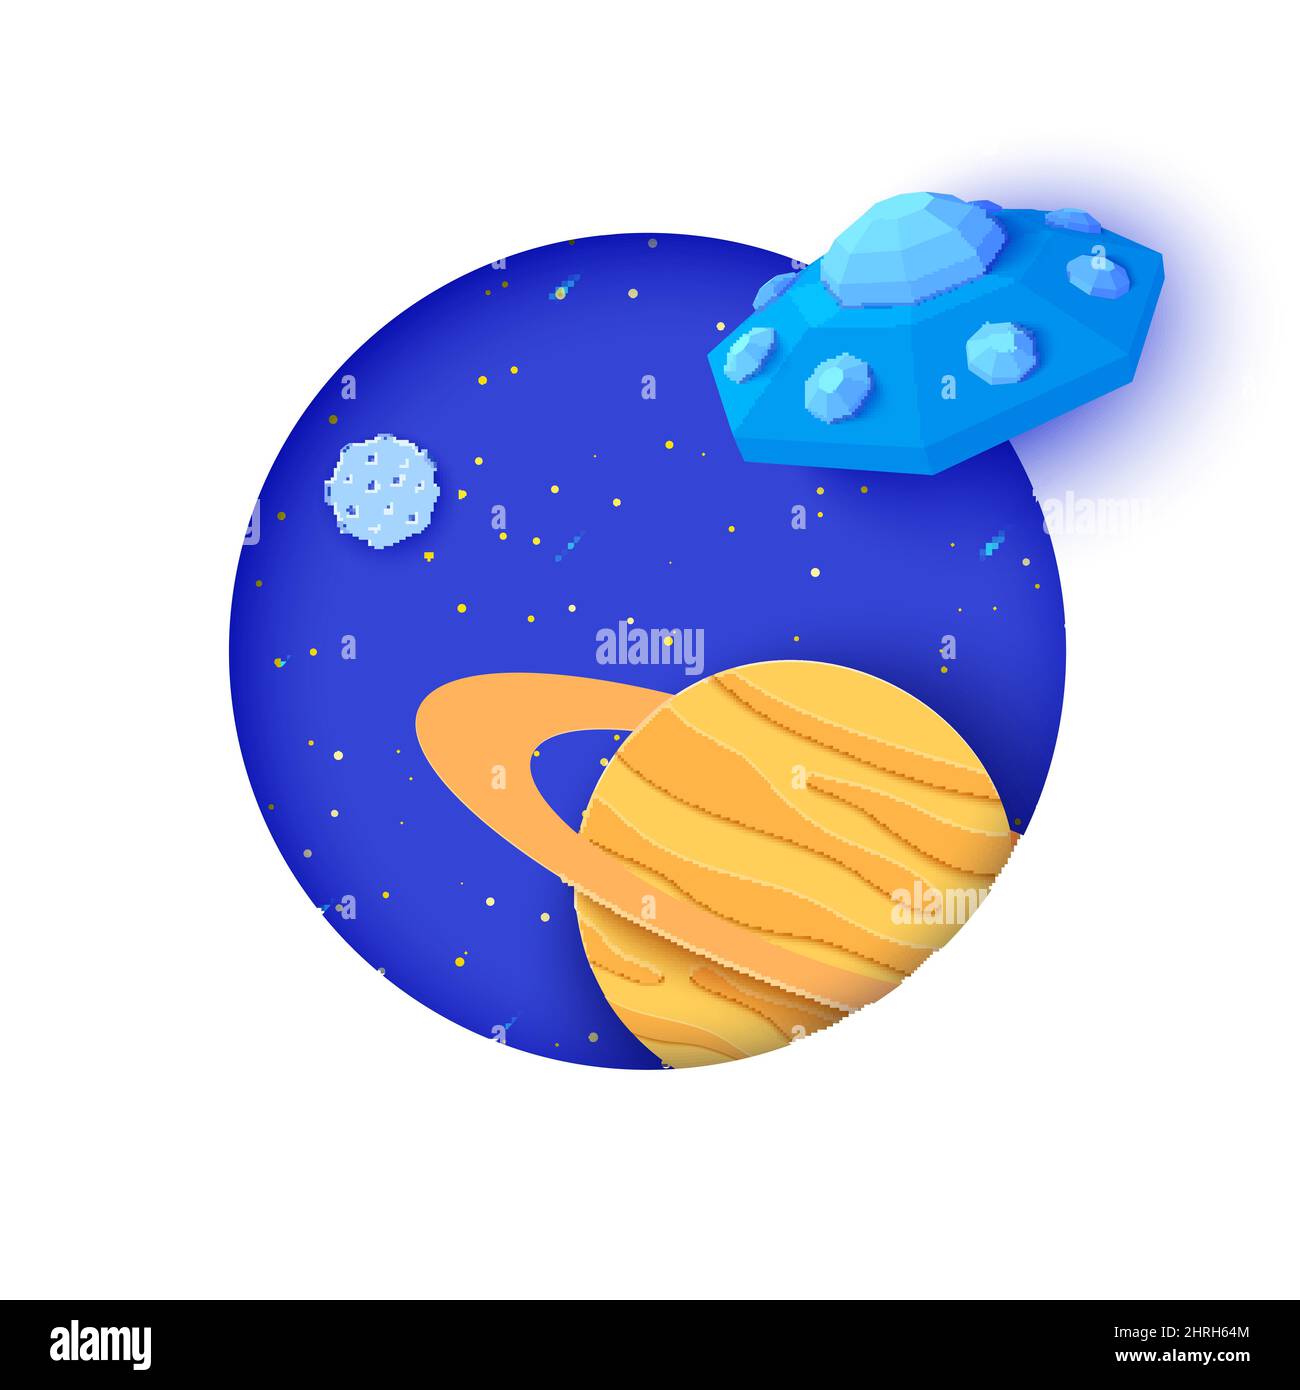 Soucoupe volante volant dans l'espace avec un style de coupe en papier. Galaxy paysage 3D fond artisanal avec cadre rond blanc et ciel étoilé. Découpe en carton Illustration de Vecteur